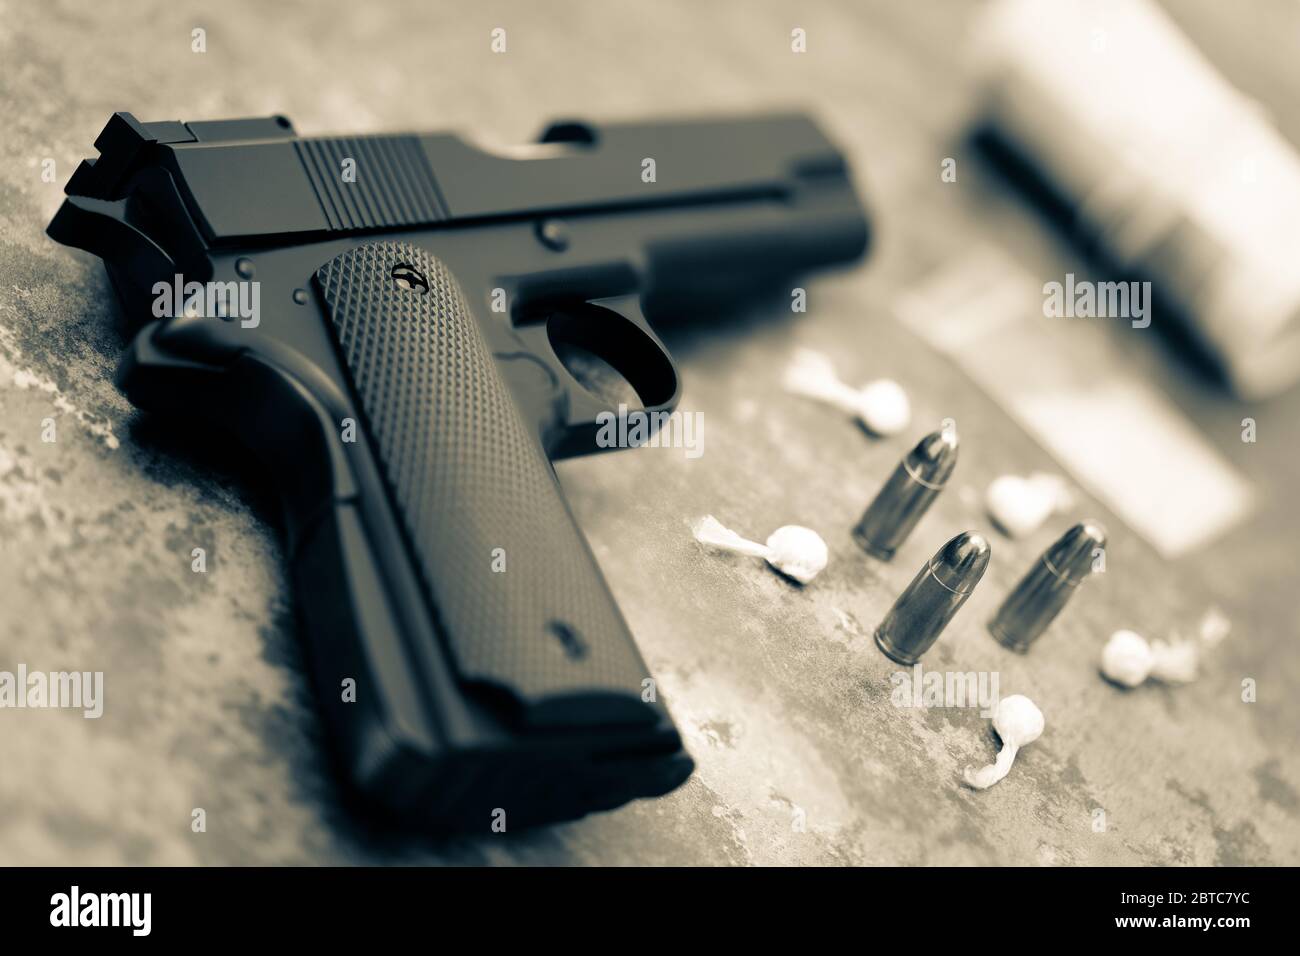 Drogues et criminalité. Une arme à feu, des balles, un rouleau d'argent et des emballages d'héroïne et de cocaïne Banque D'Images